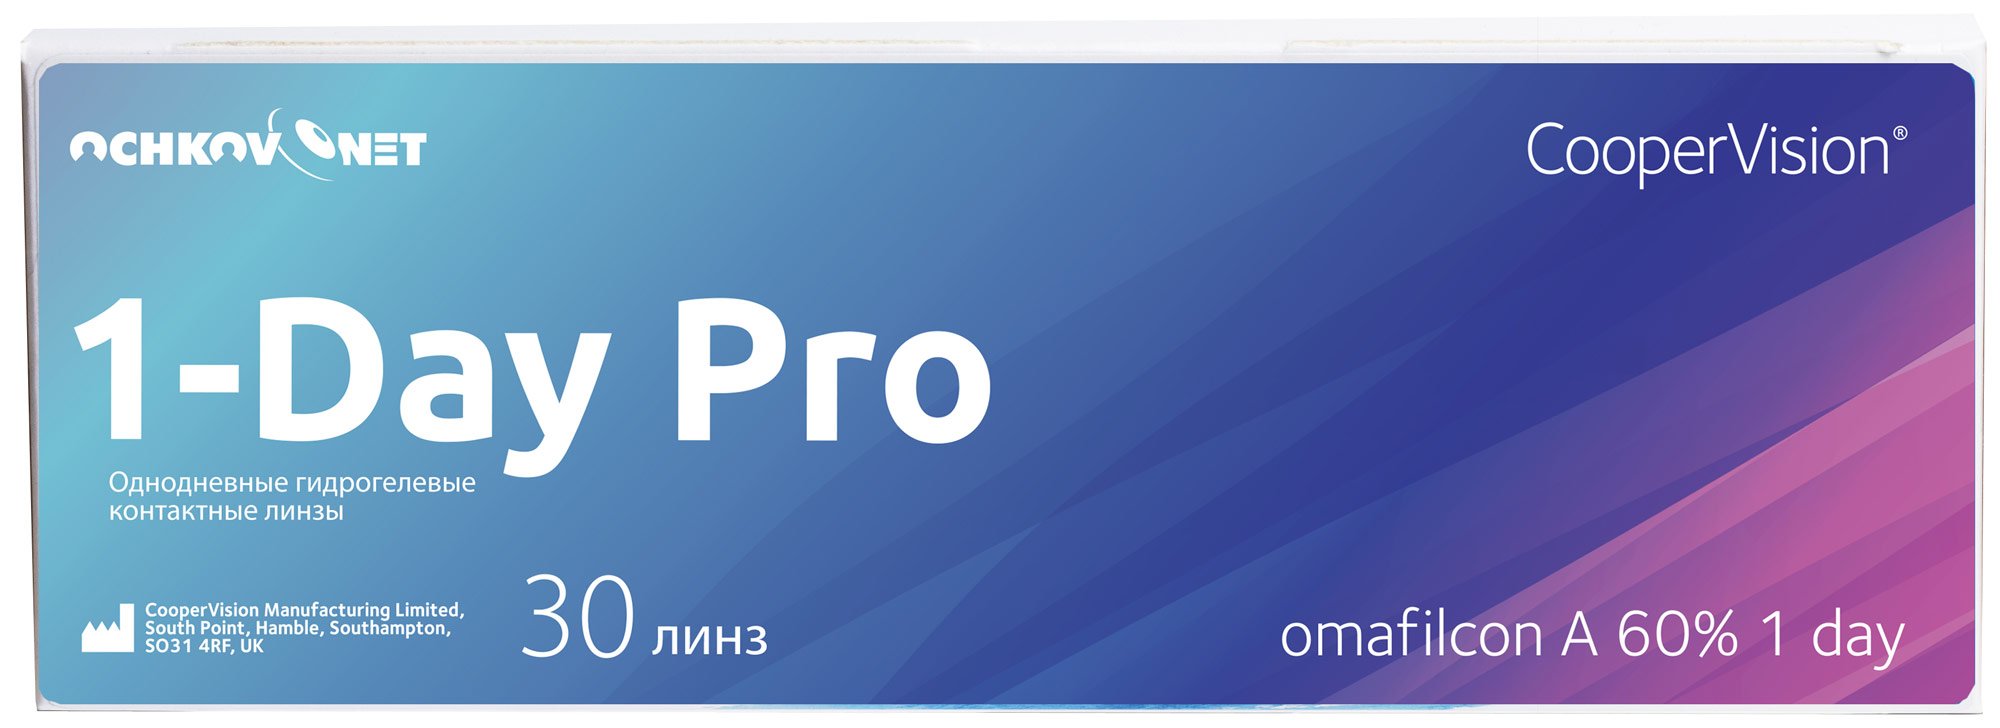 Купить Контактные линзы Ochkov.Net 1-Day Pro 30 линз 8.7, -1.75